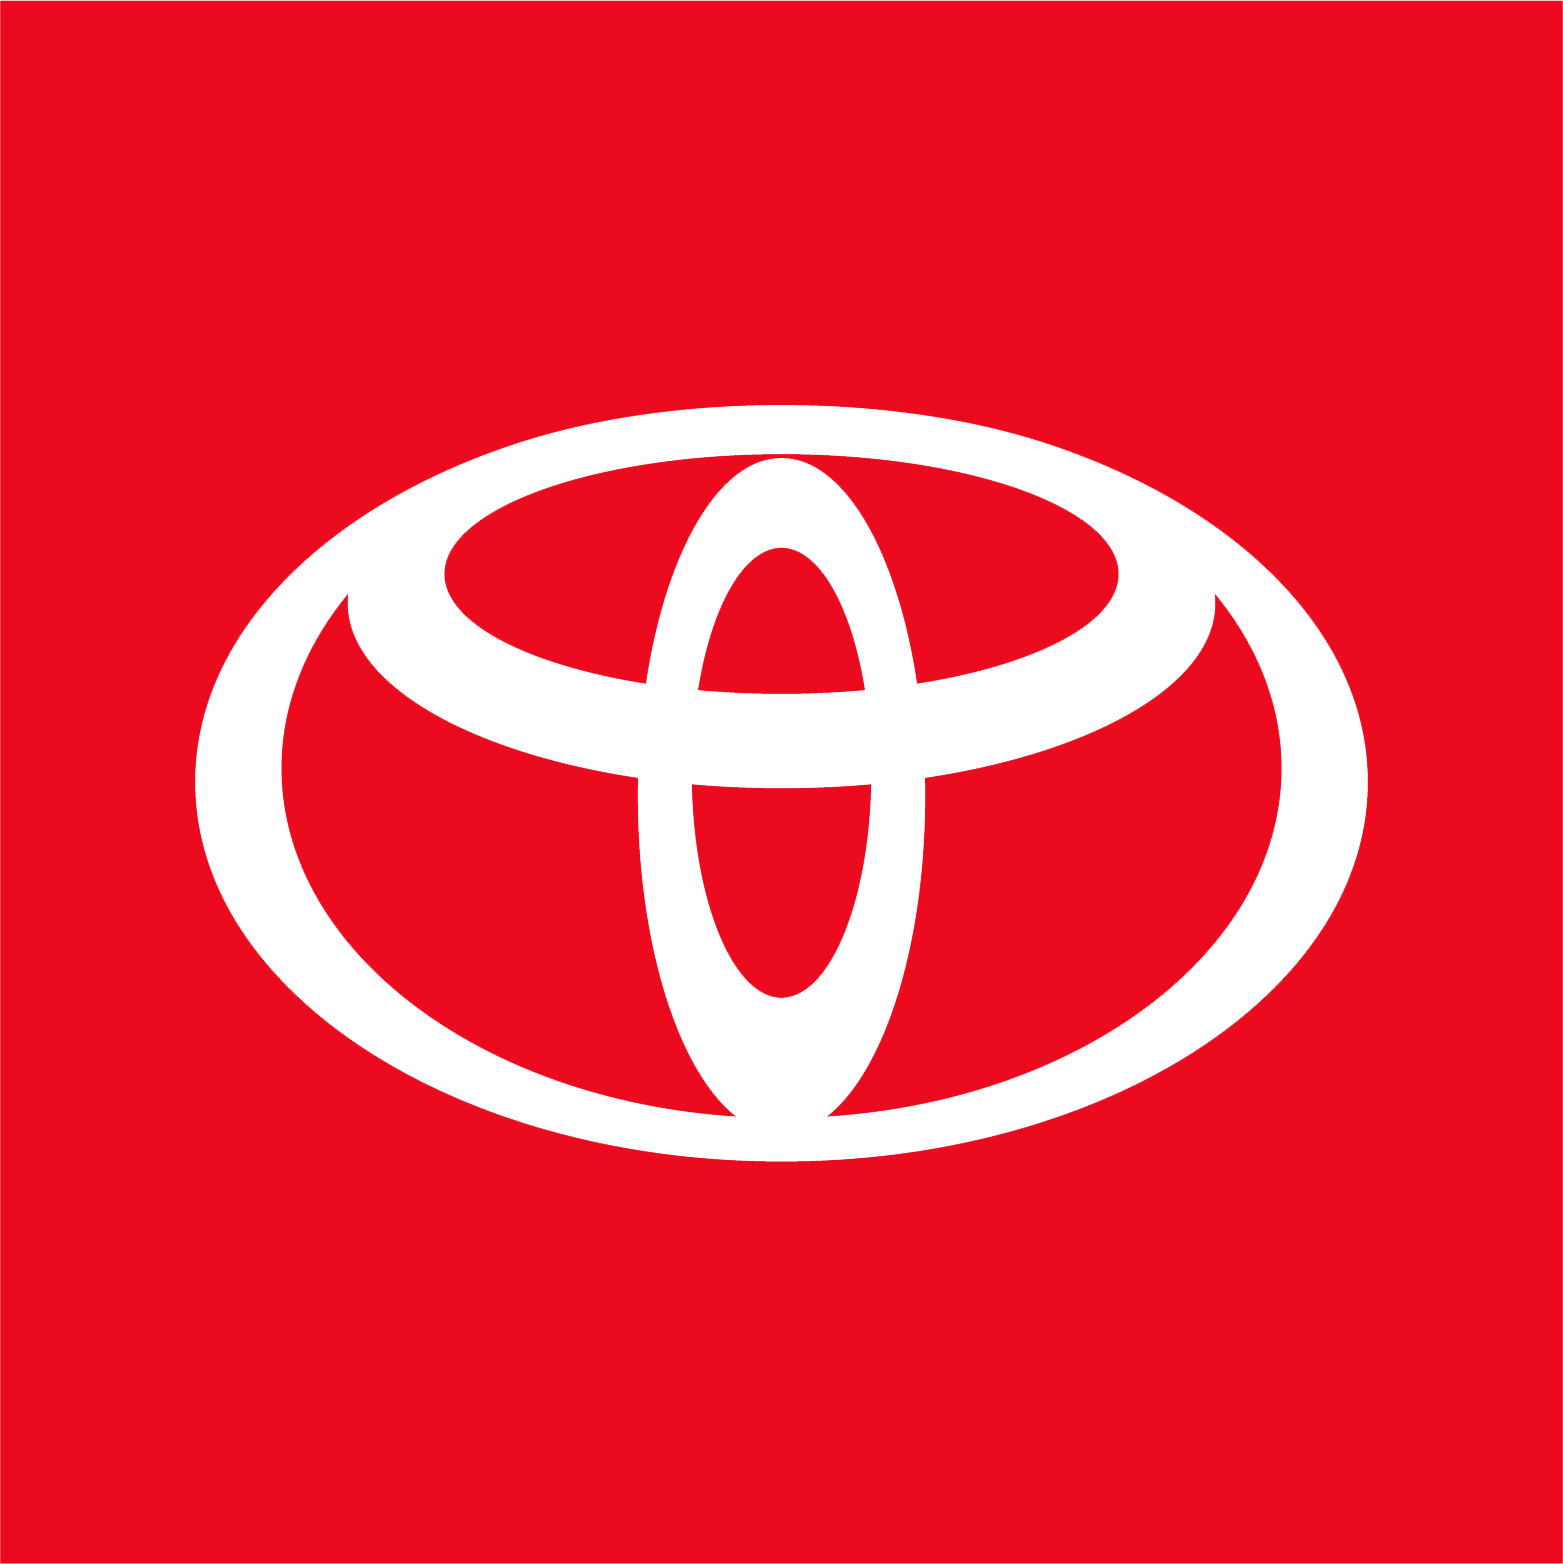 Motive Toyota-oem_logo